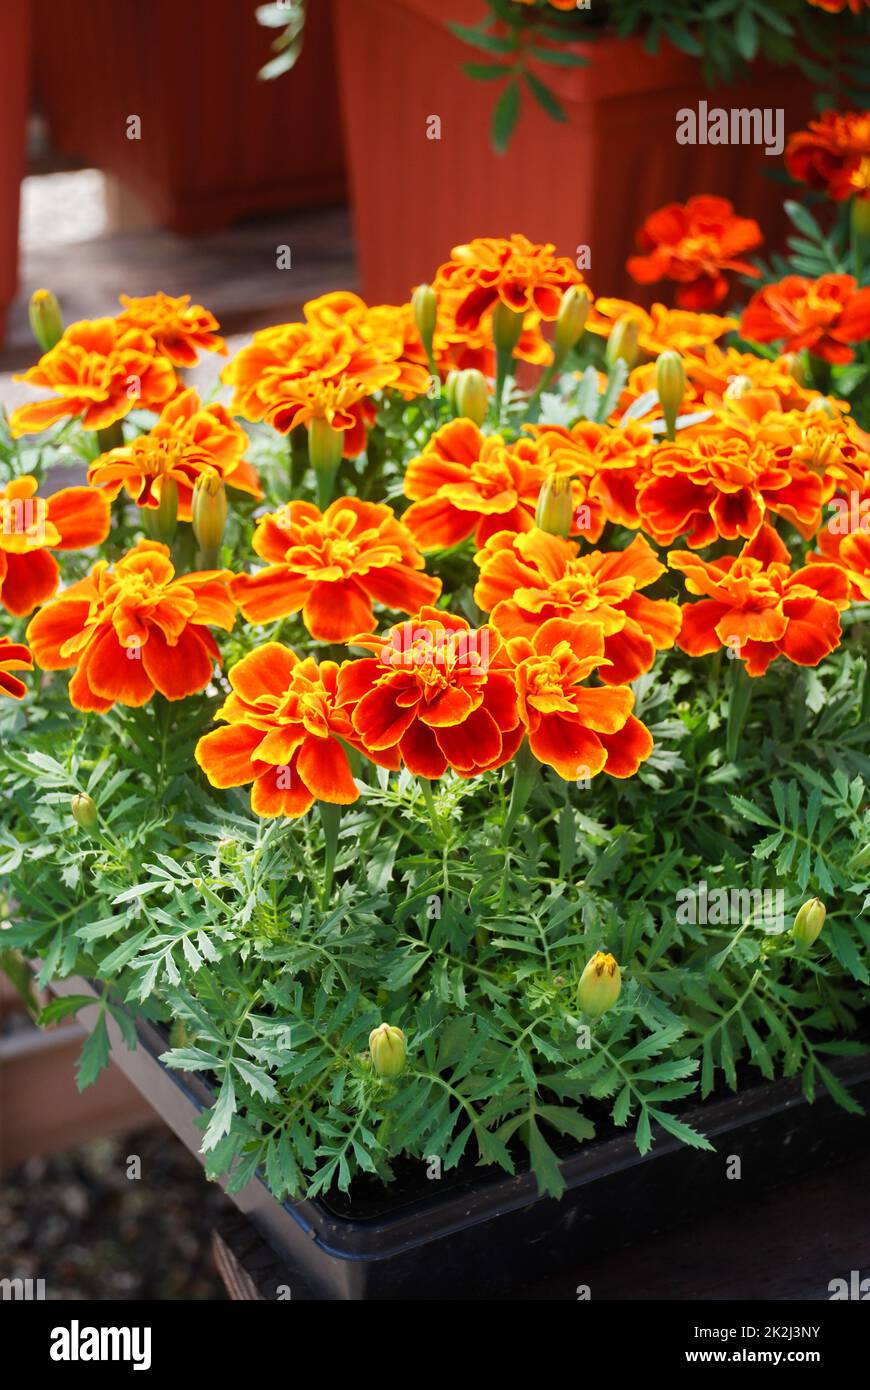 Tagetes patula marigold français en fleur, fleurs orange jaune, feuilles vertes pleine fleur Banque D'Images